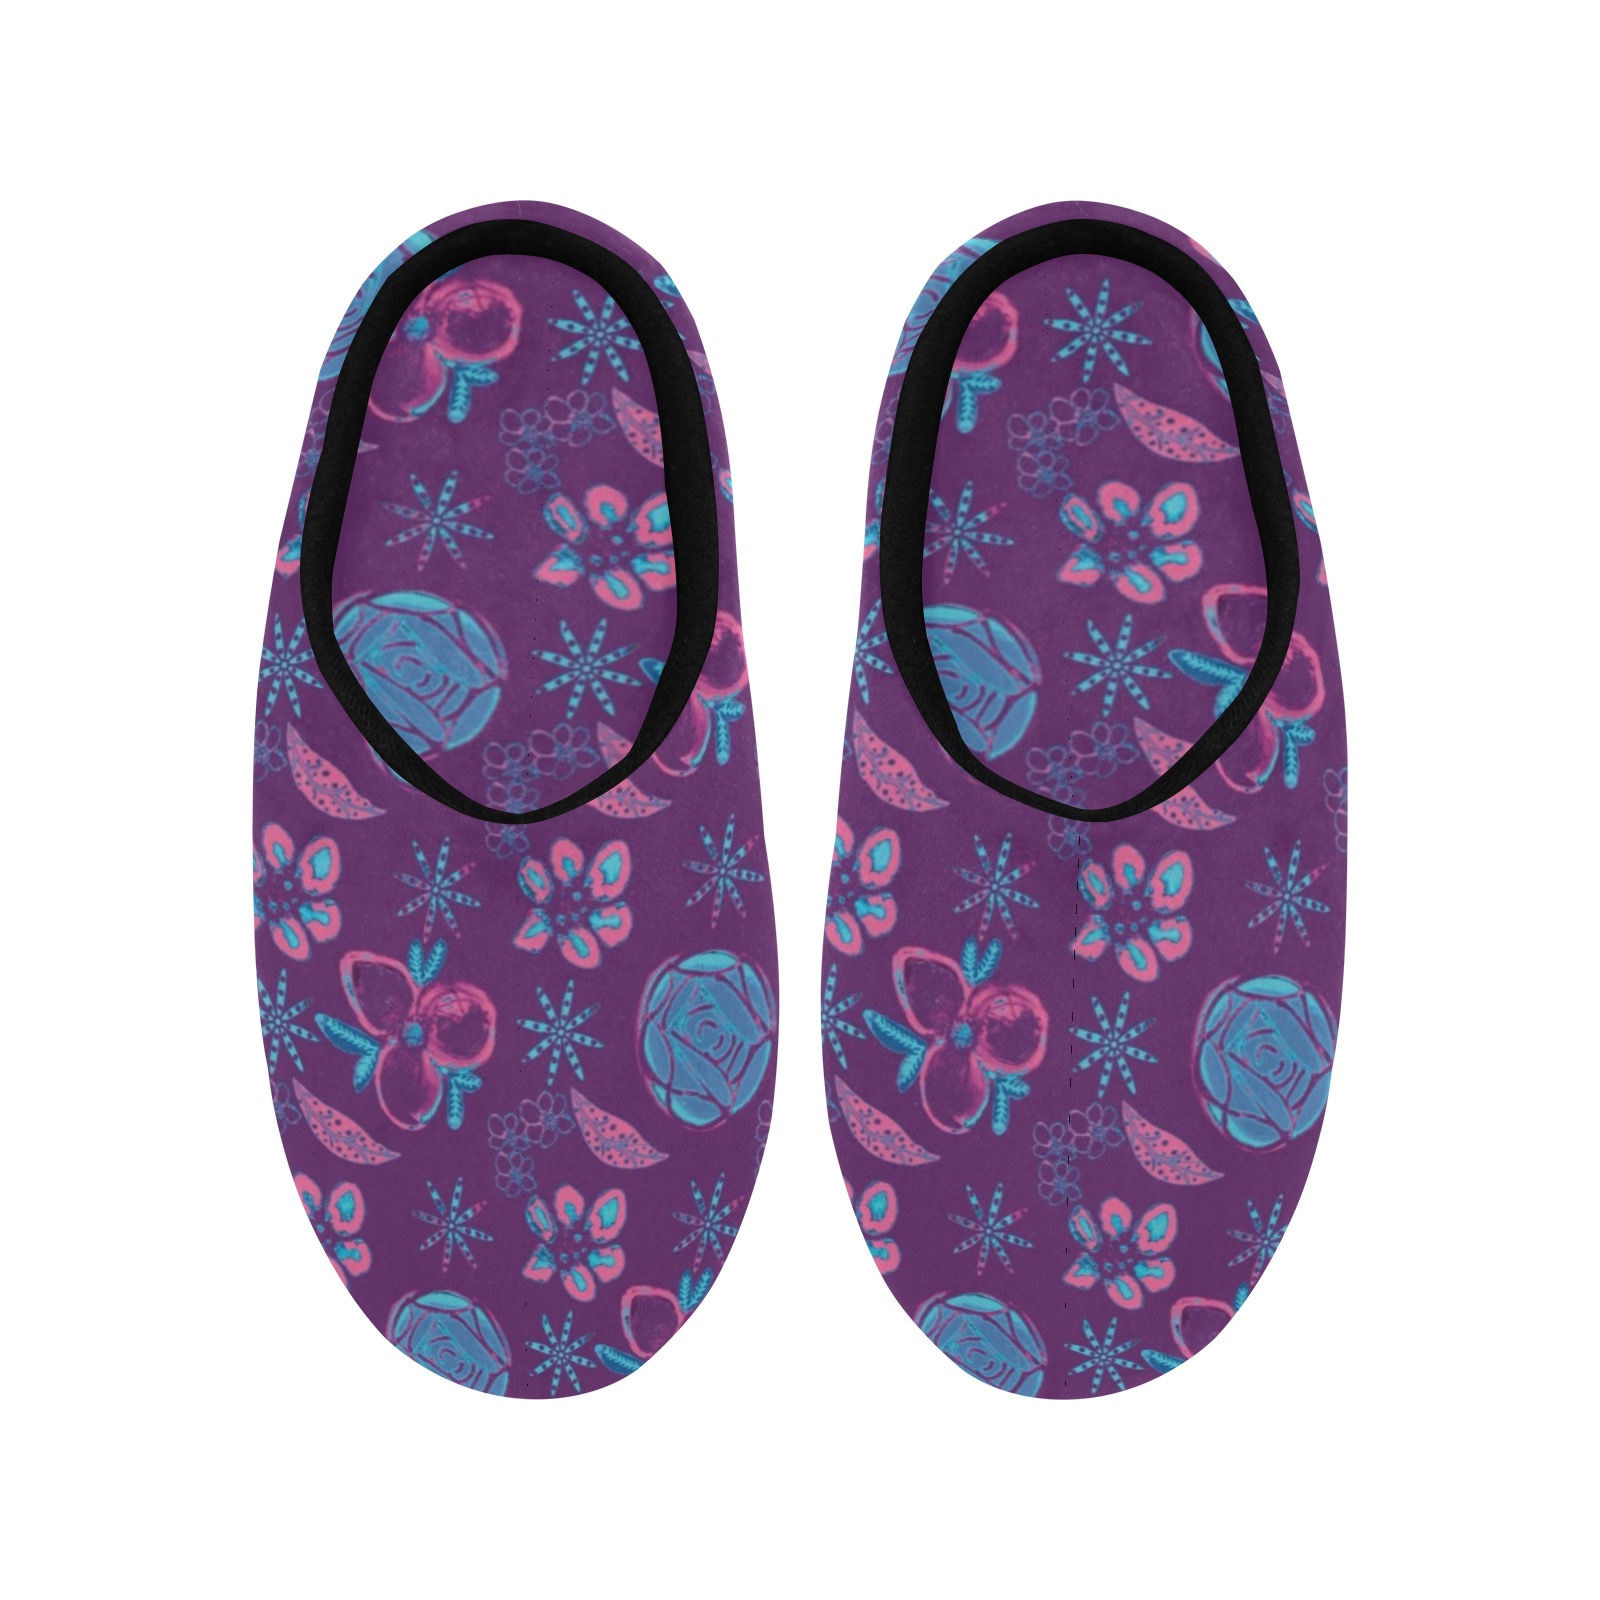 Be Unique Floral Design Women's Non-Slip Cotton Slippers (Model 0602)